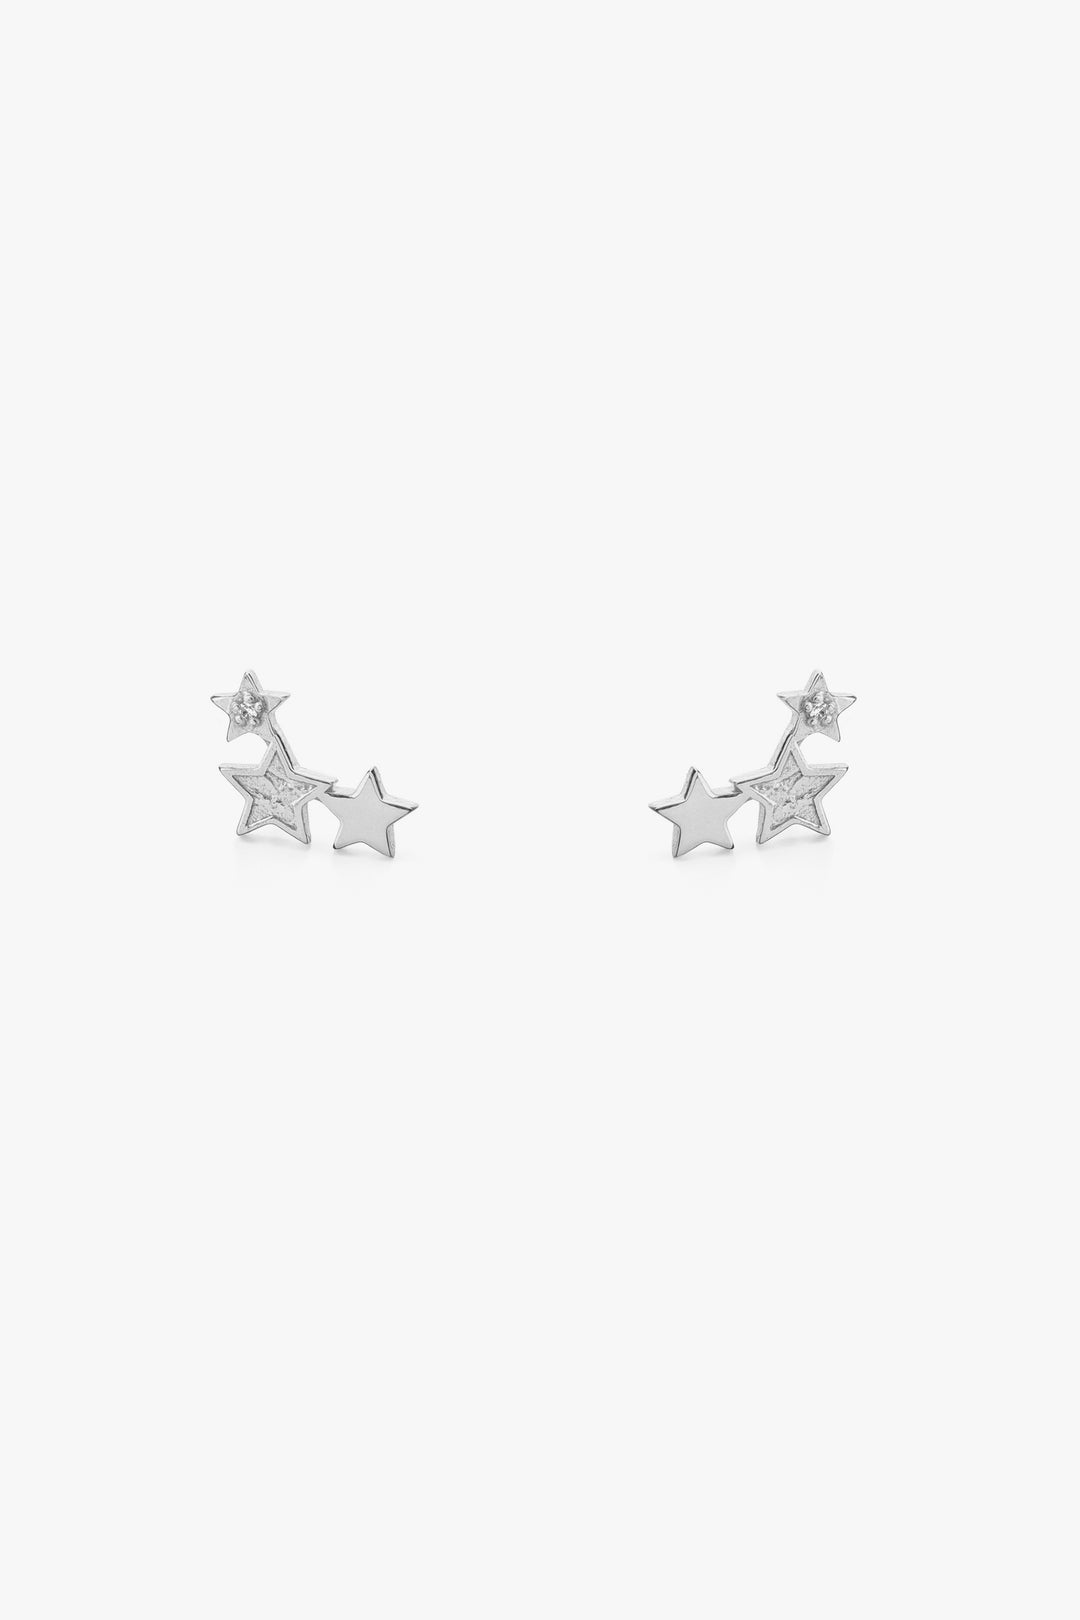 Tutti & Co Celeste Earrings in Silver